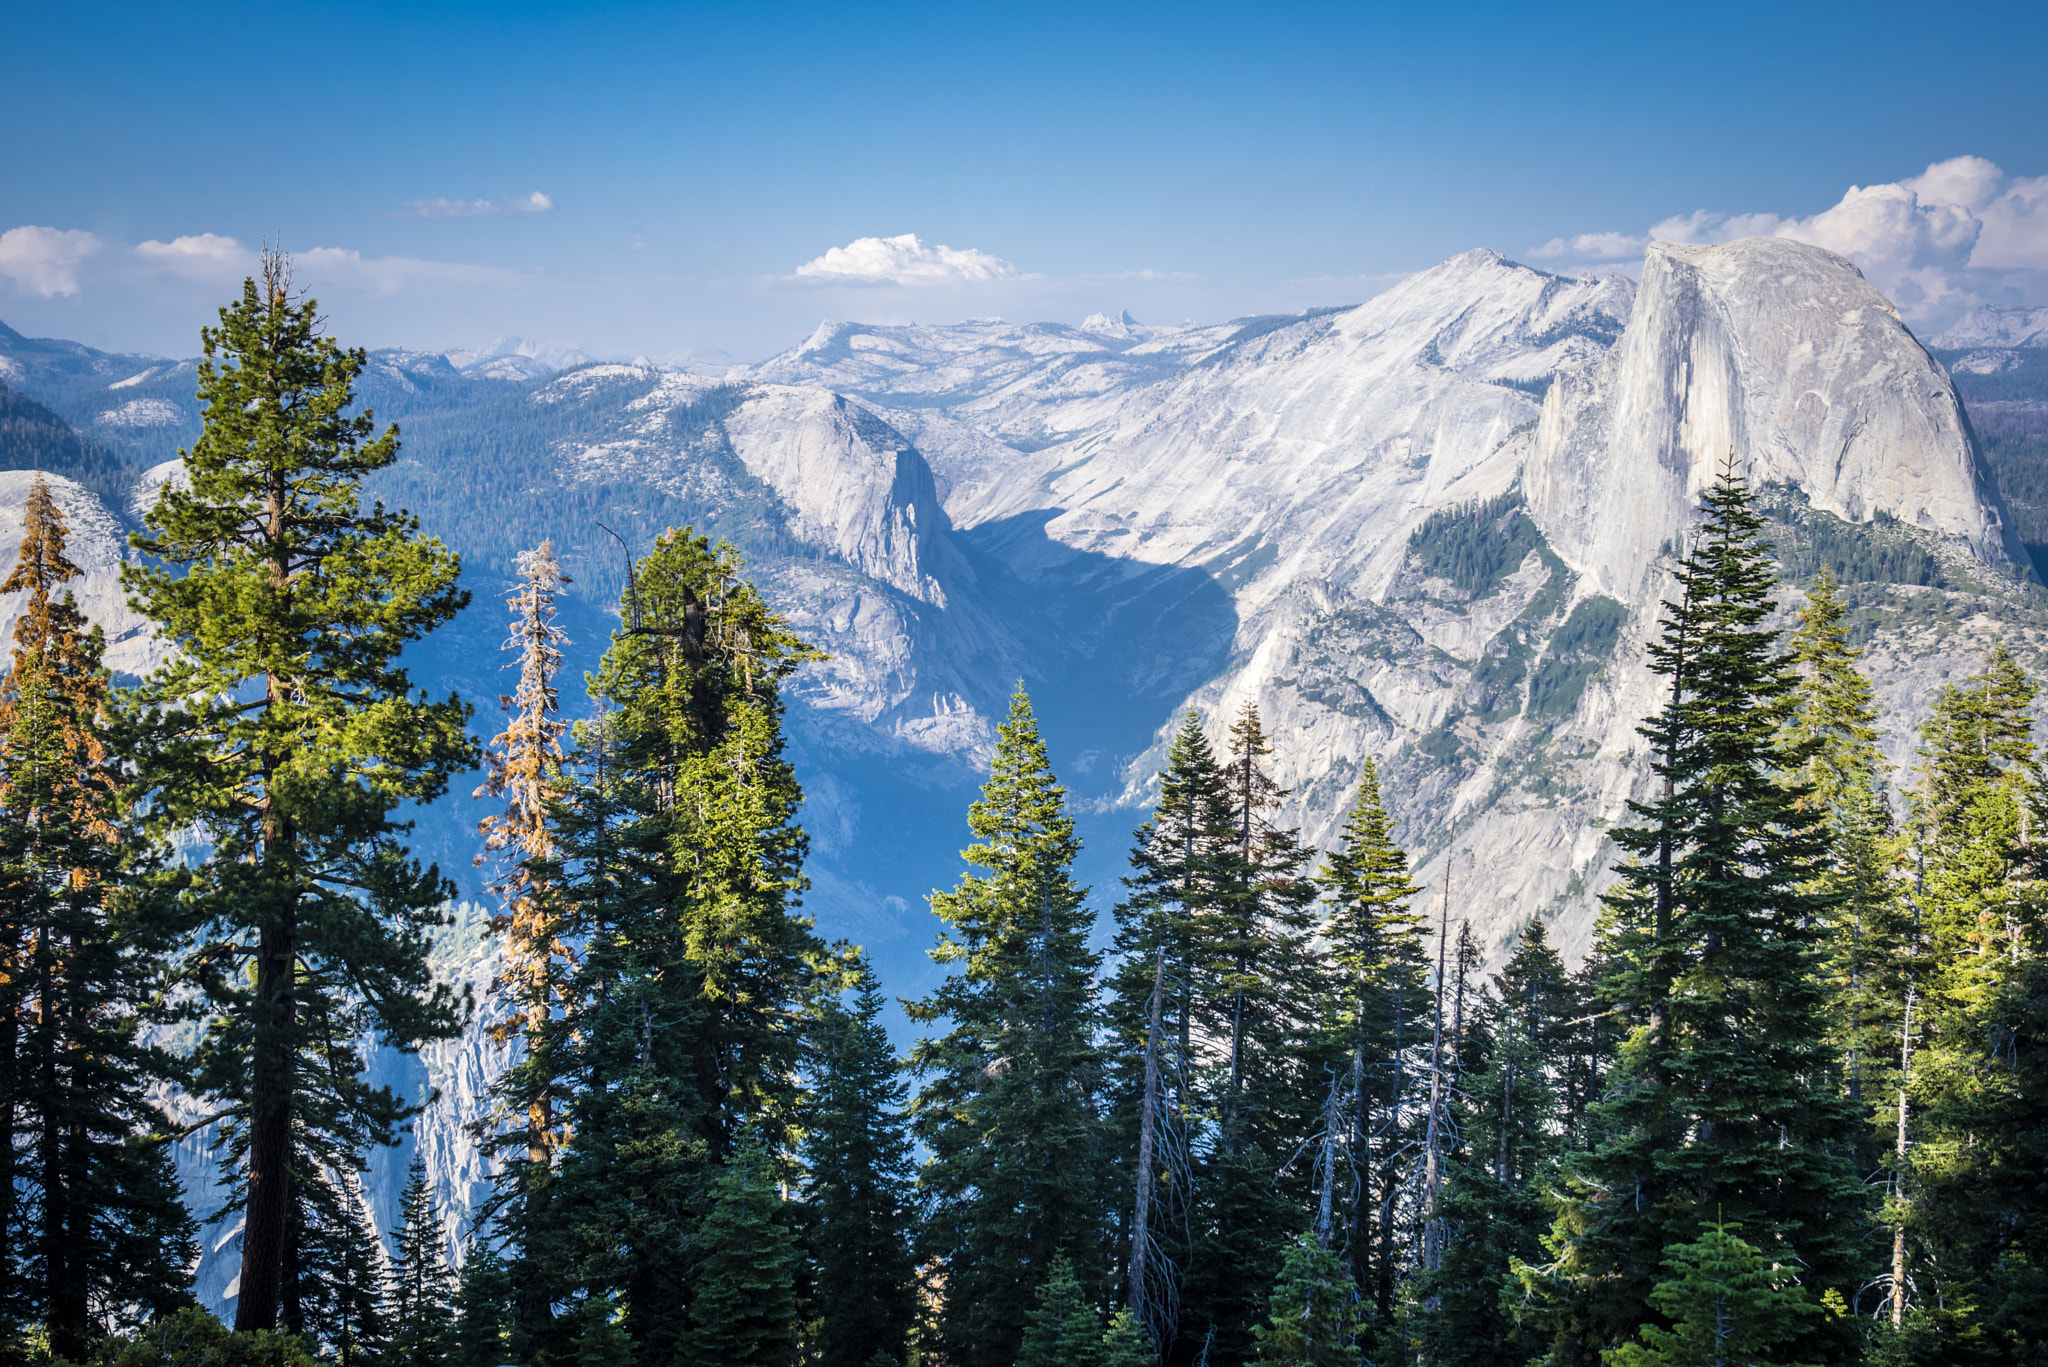 Nikon D600 + AF-S Zoom-Nikkor 24-85mm f/3.5-4.5G IF-ED sample photo. Yosemite photography